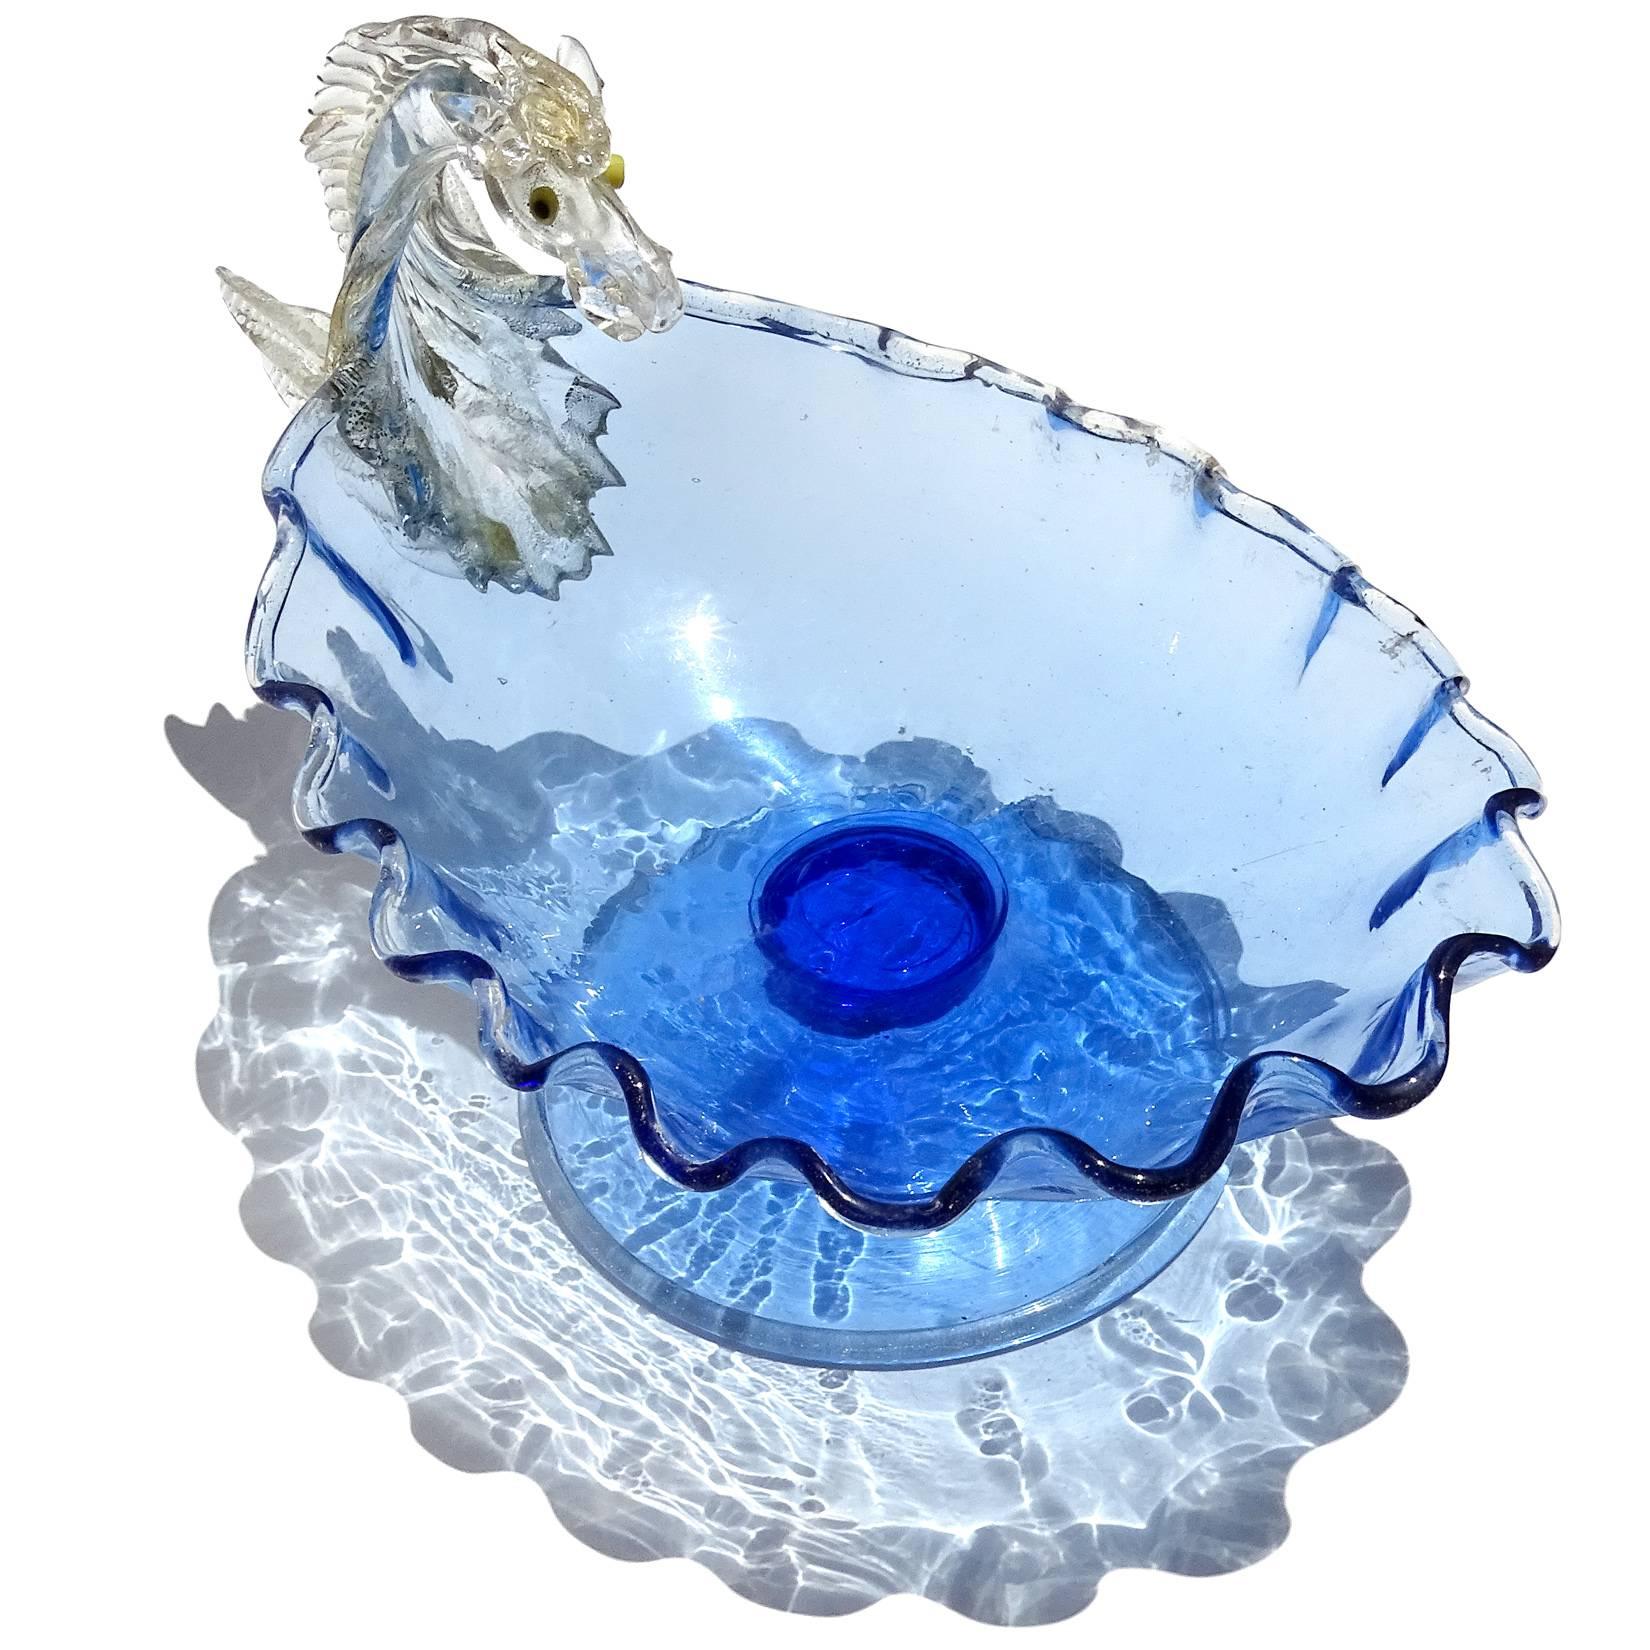 Antike frühe venezianische kobaltblau mit goldenen Akzenten italienische Kunst Glas Pegasus Pferd Kompott Schüssel. Wird den Firmen Artisti Barovier / Fratelli Toso zugeschrieben, wie im Buch 